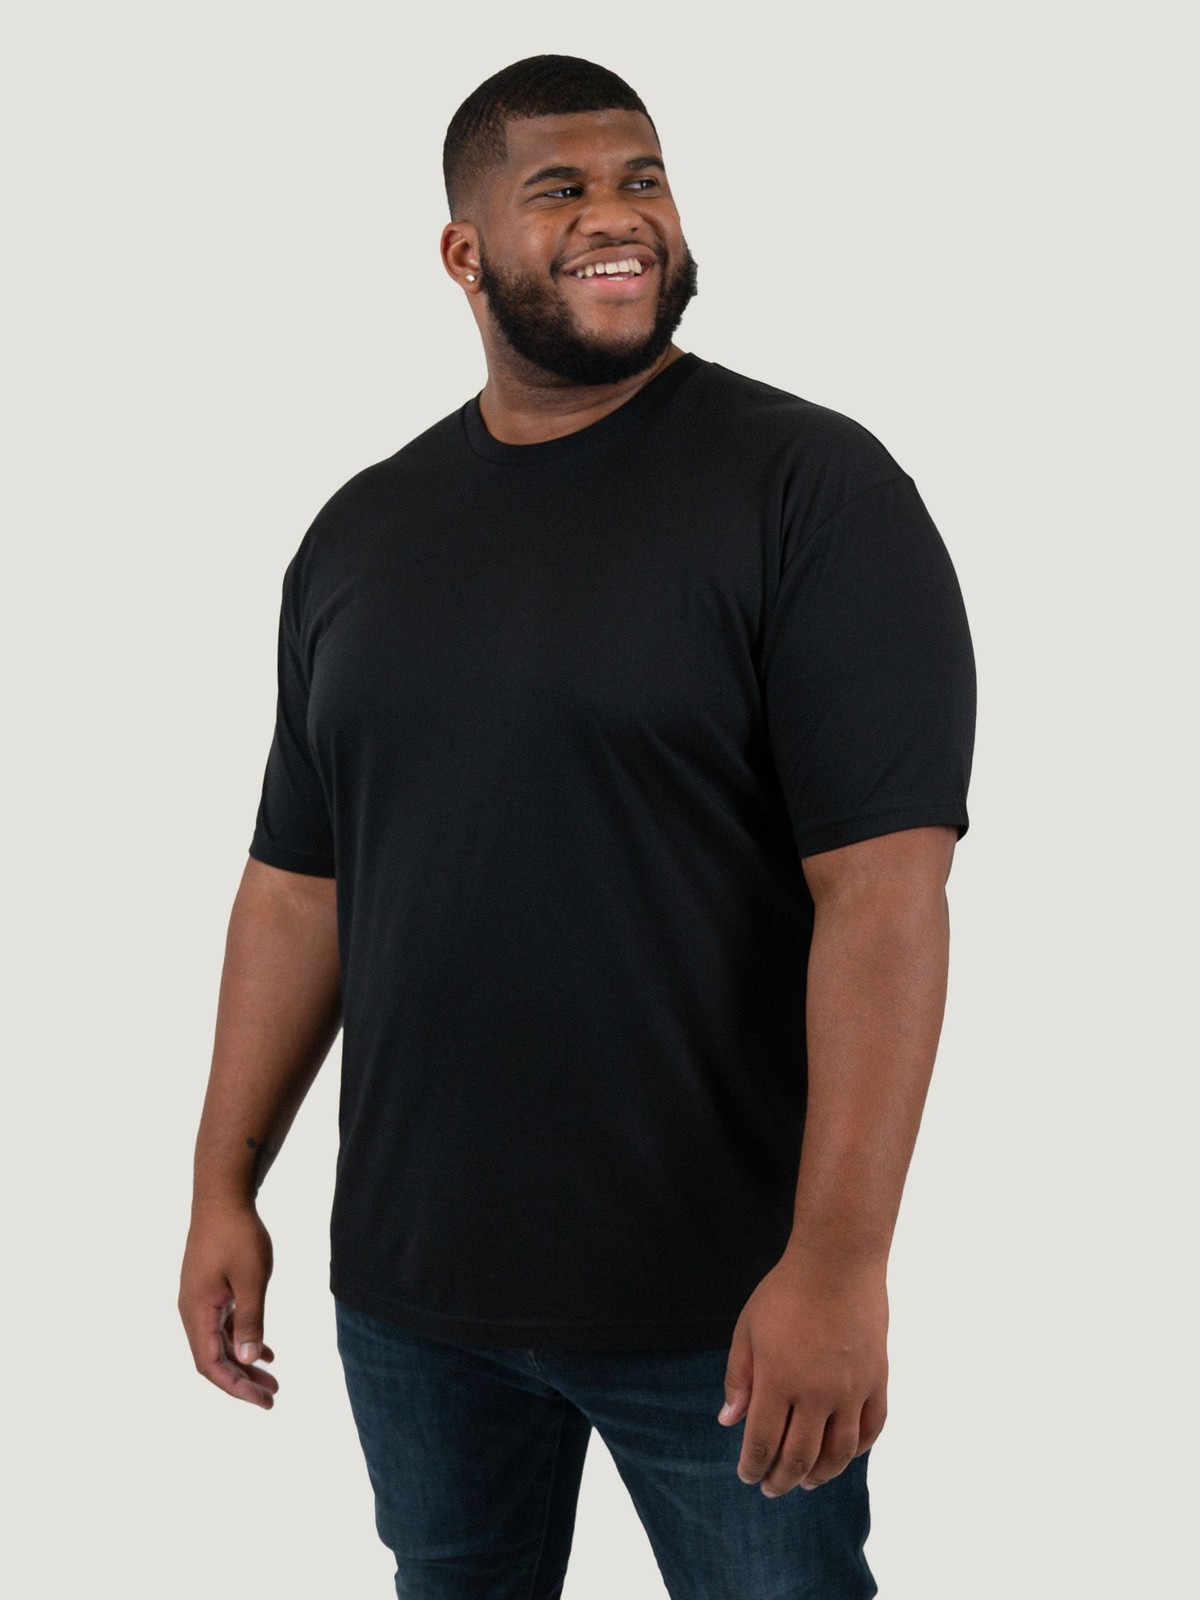 Sympton Architectuur bezorgdheid Black Crew Neck Tee | T-Shirts For Men | Fresh Clean Tees